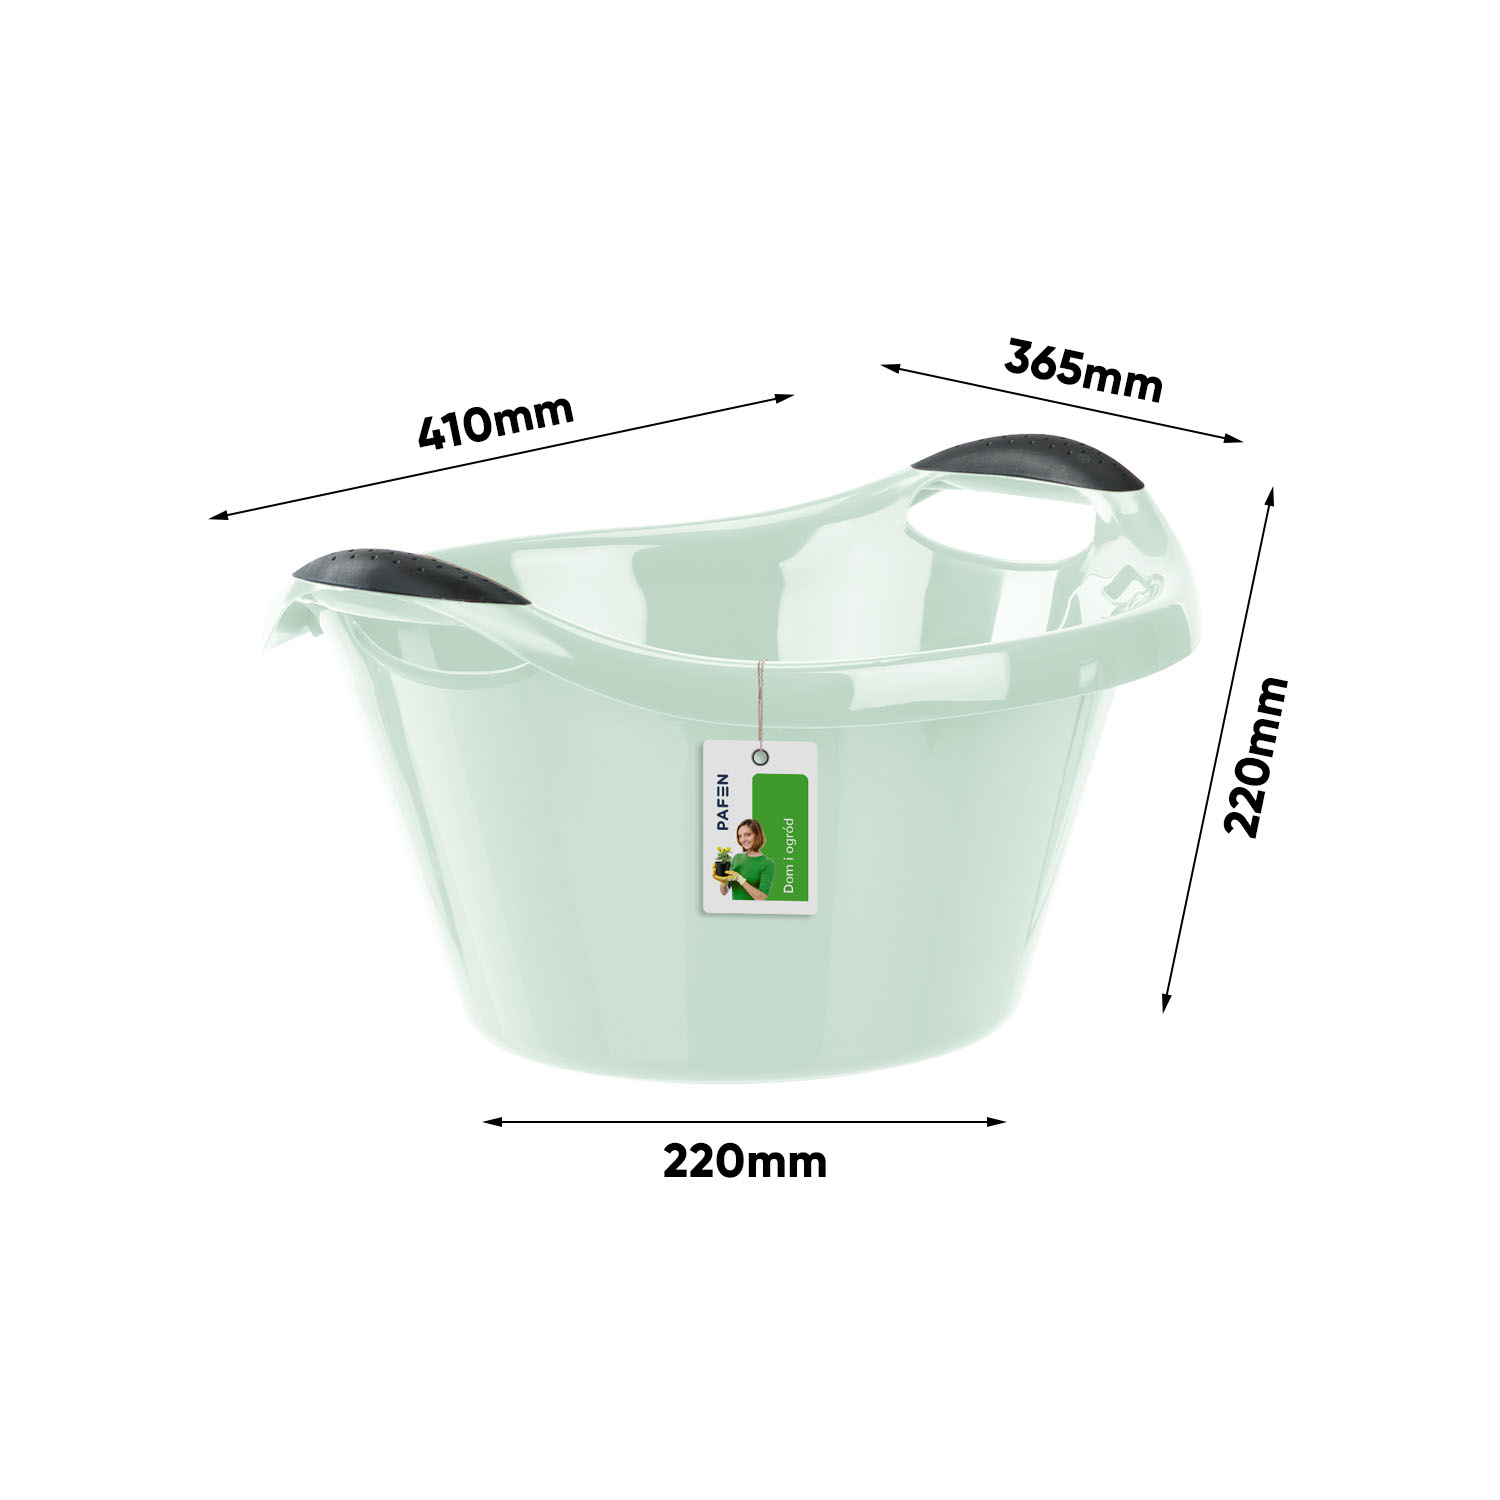 Wymiary Laundry bowl Green (1)